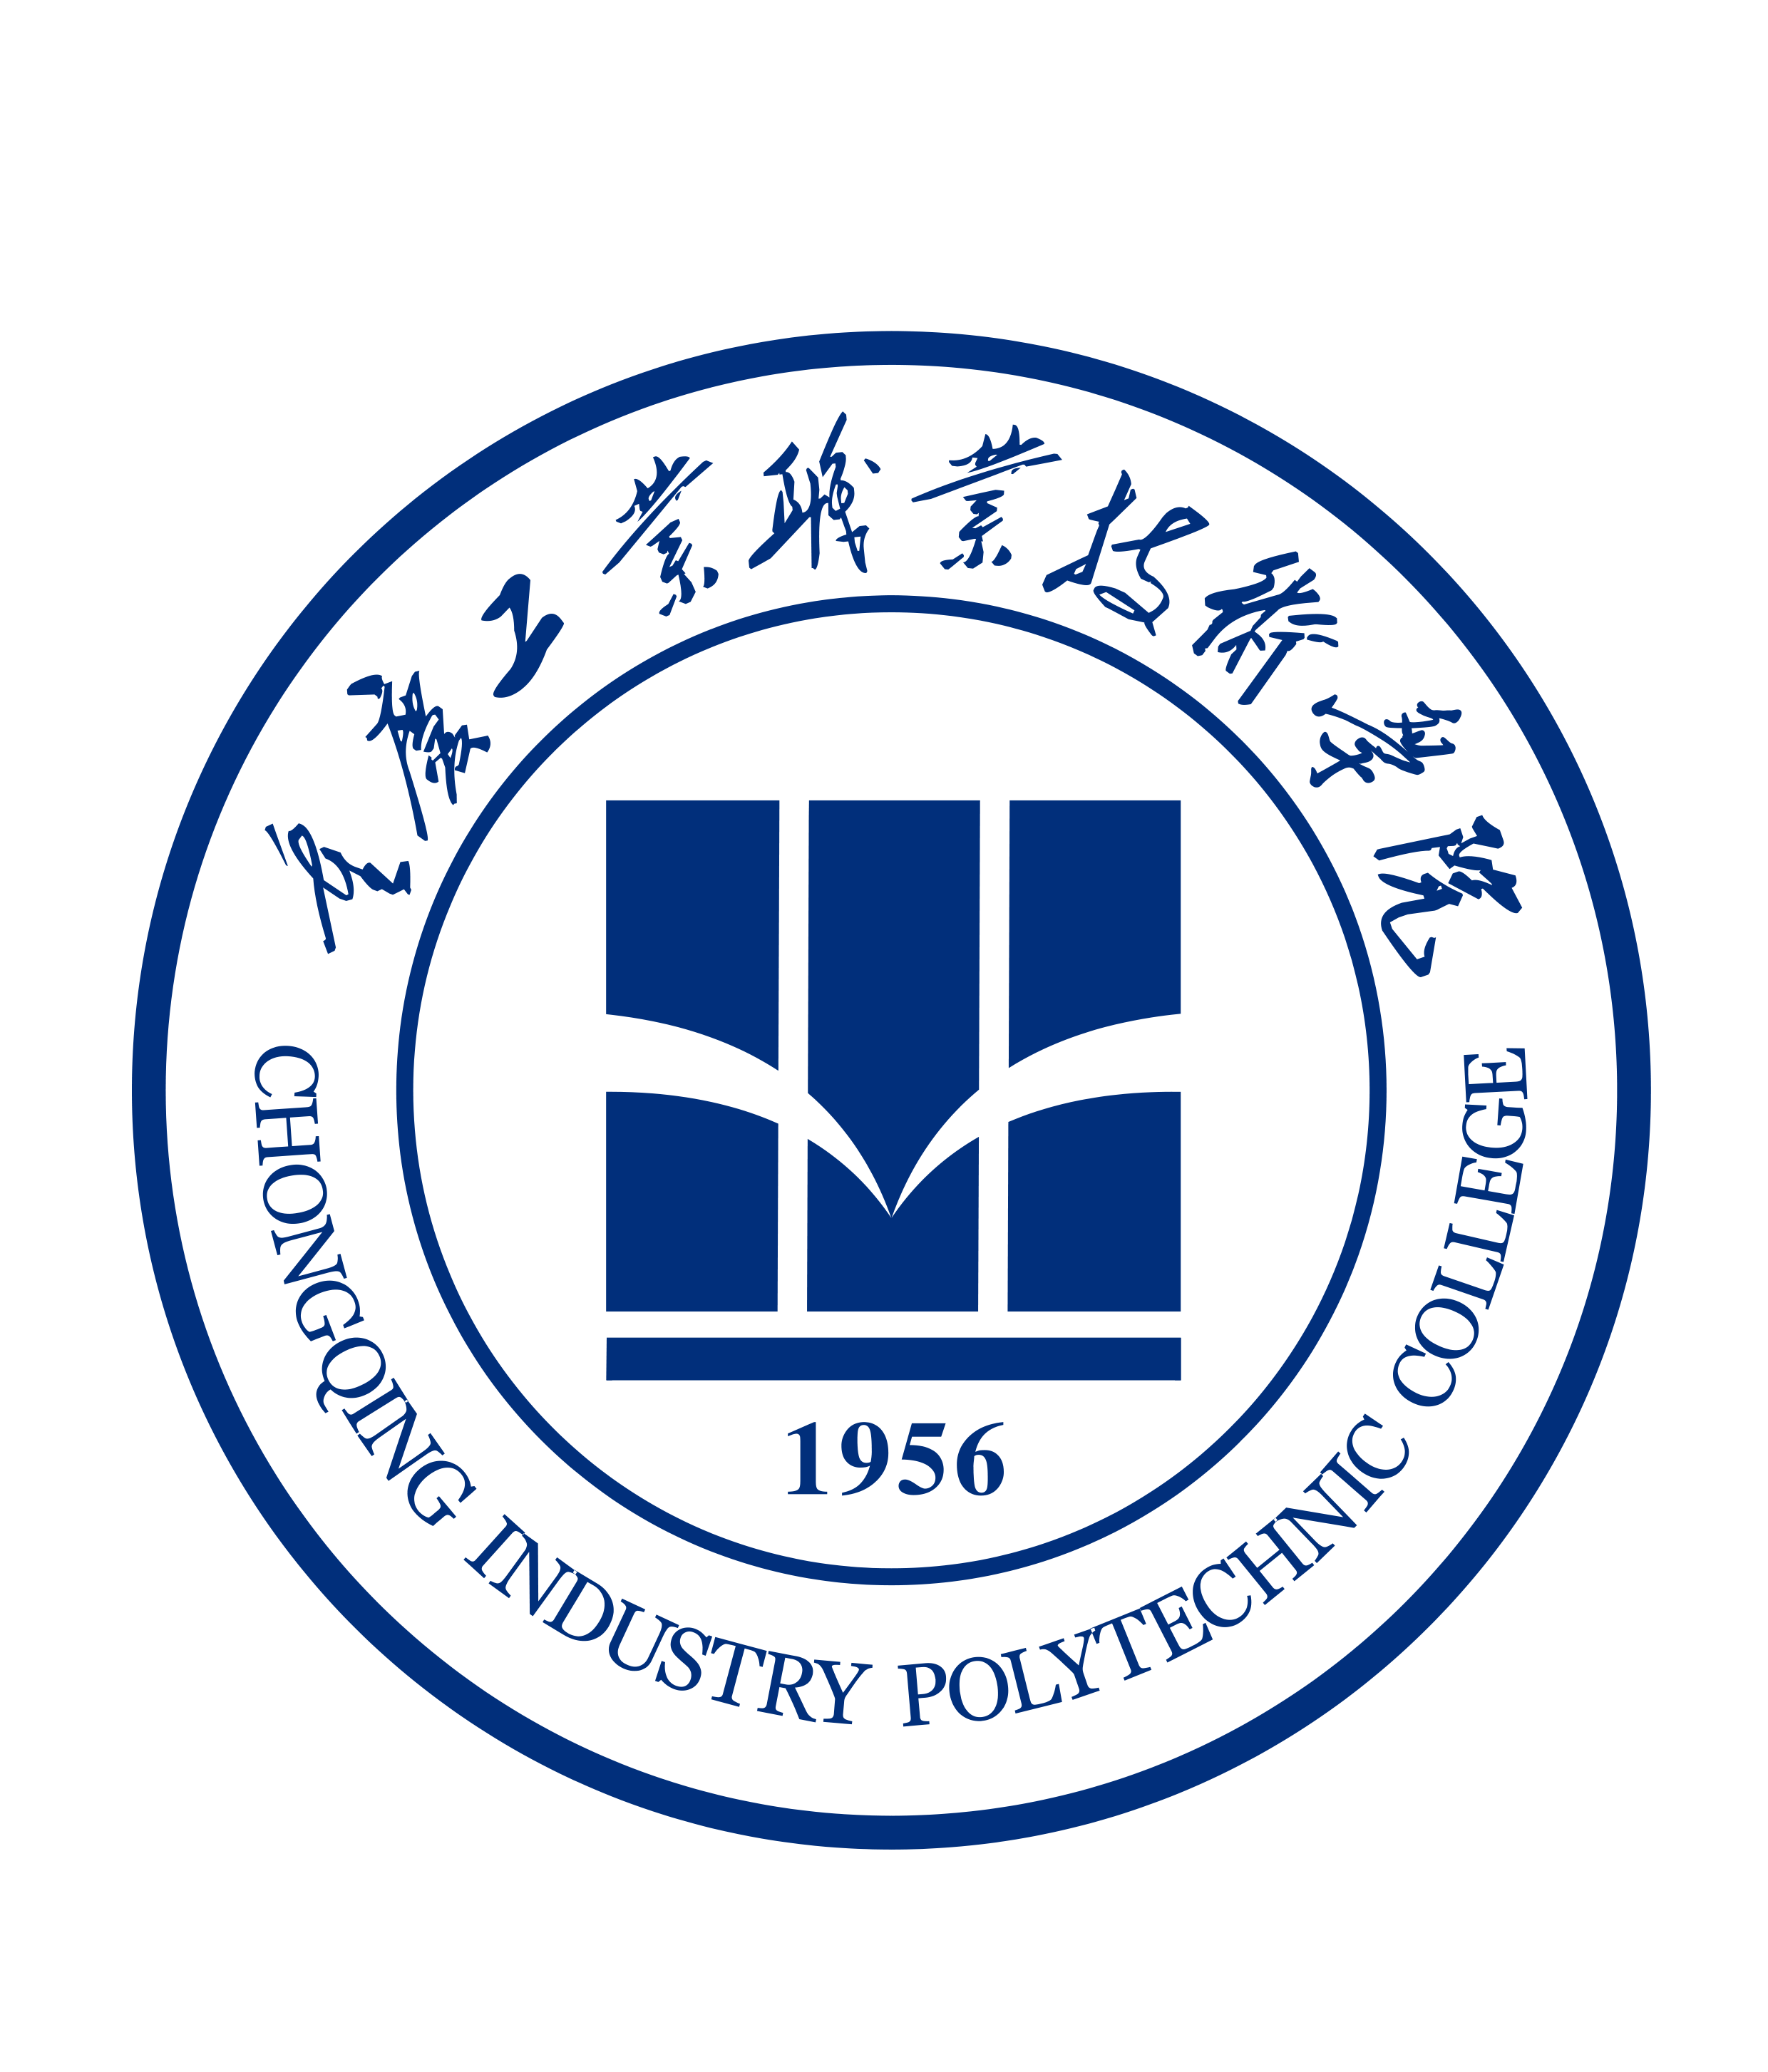 重庆工业职业技术学院函授,重庆工业职业技术学院继续教育学院,重庆工业职业技术学院成人教育